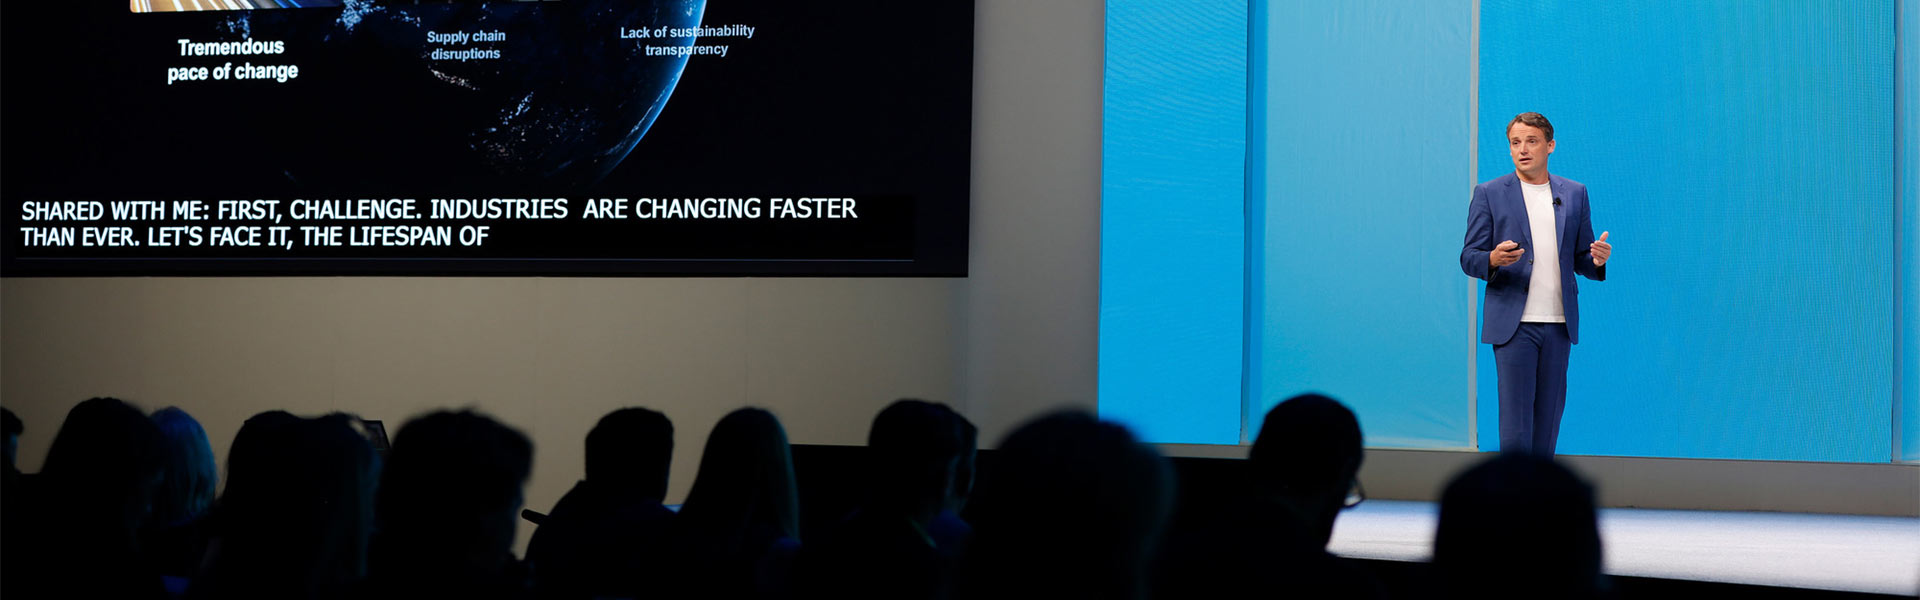 SAP CEO Christian Klein: Mit intelligenten, nachhaltigen Innovationen auch in den kommenden 50 Jahren neue Wege beschreiten